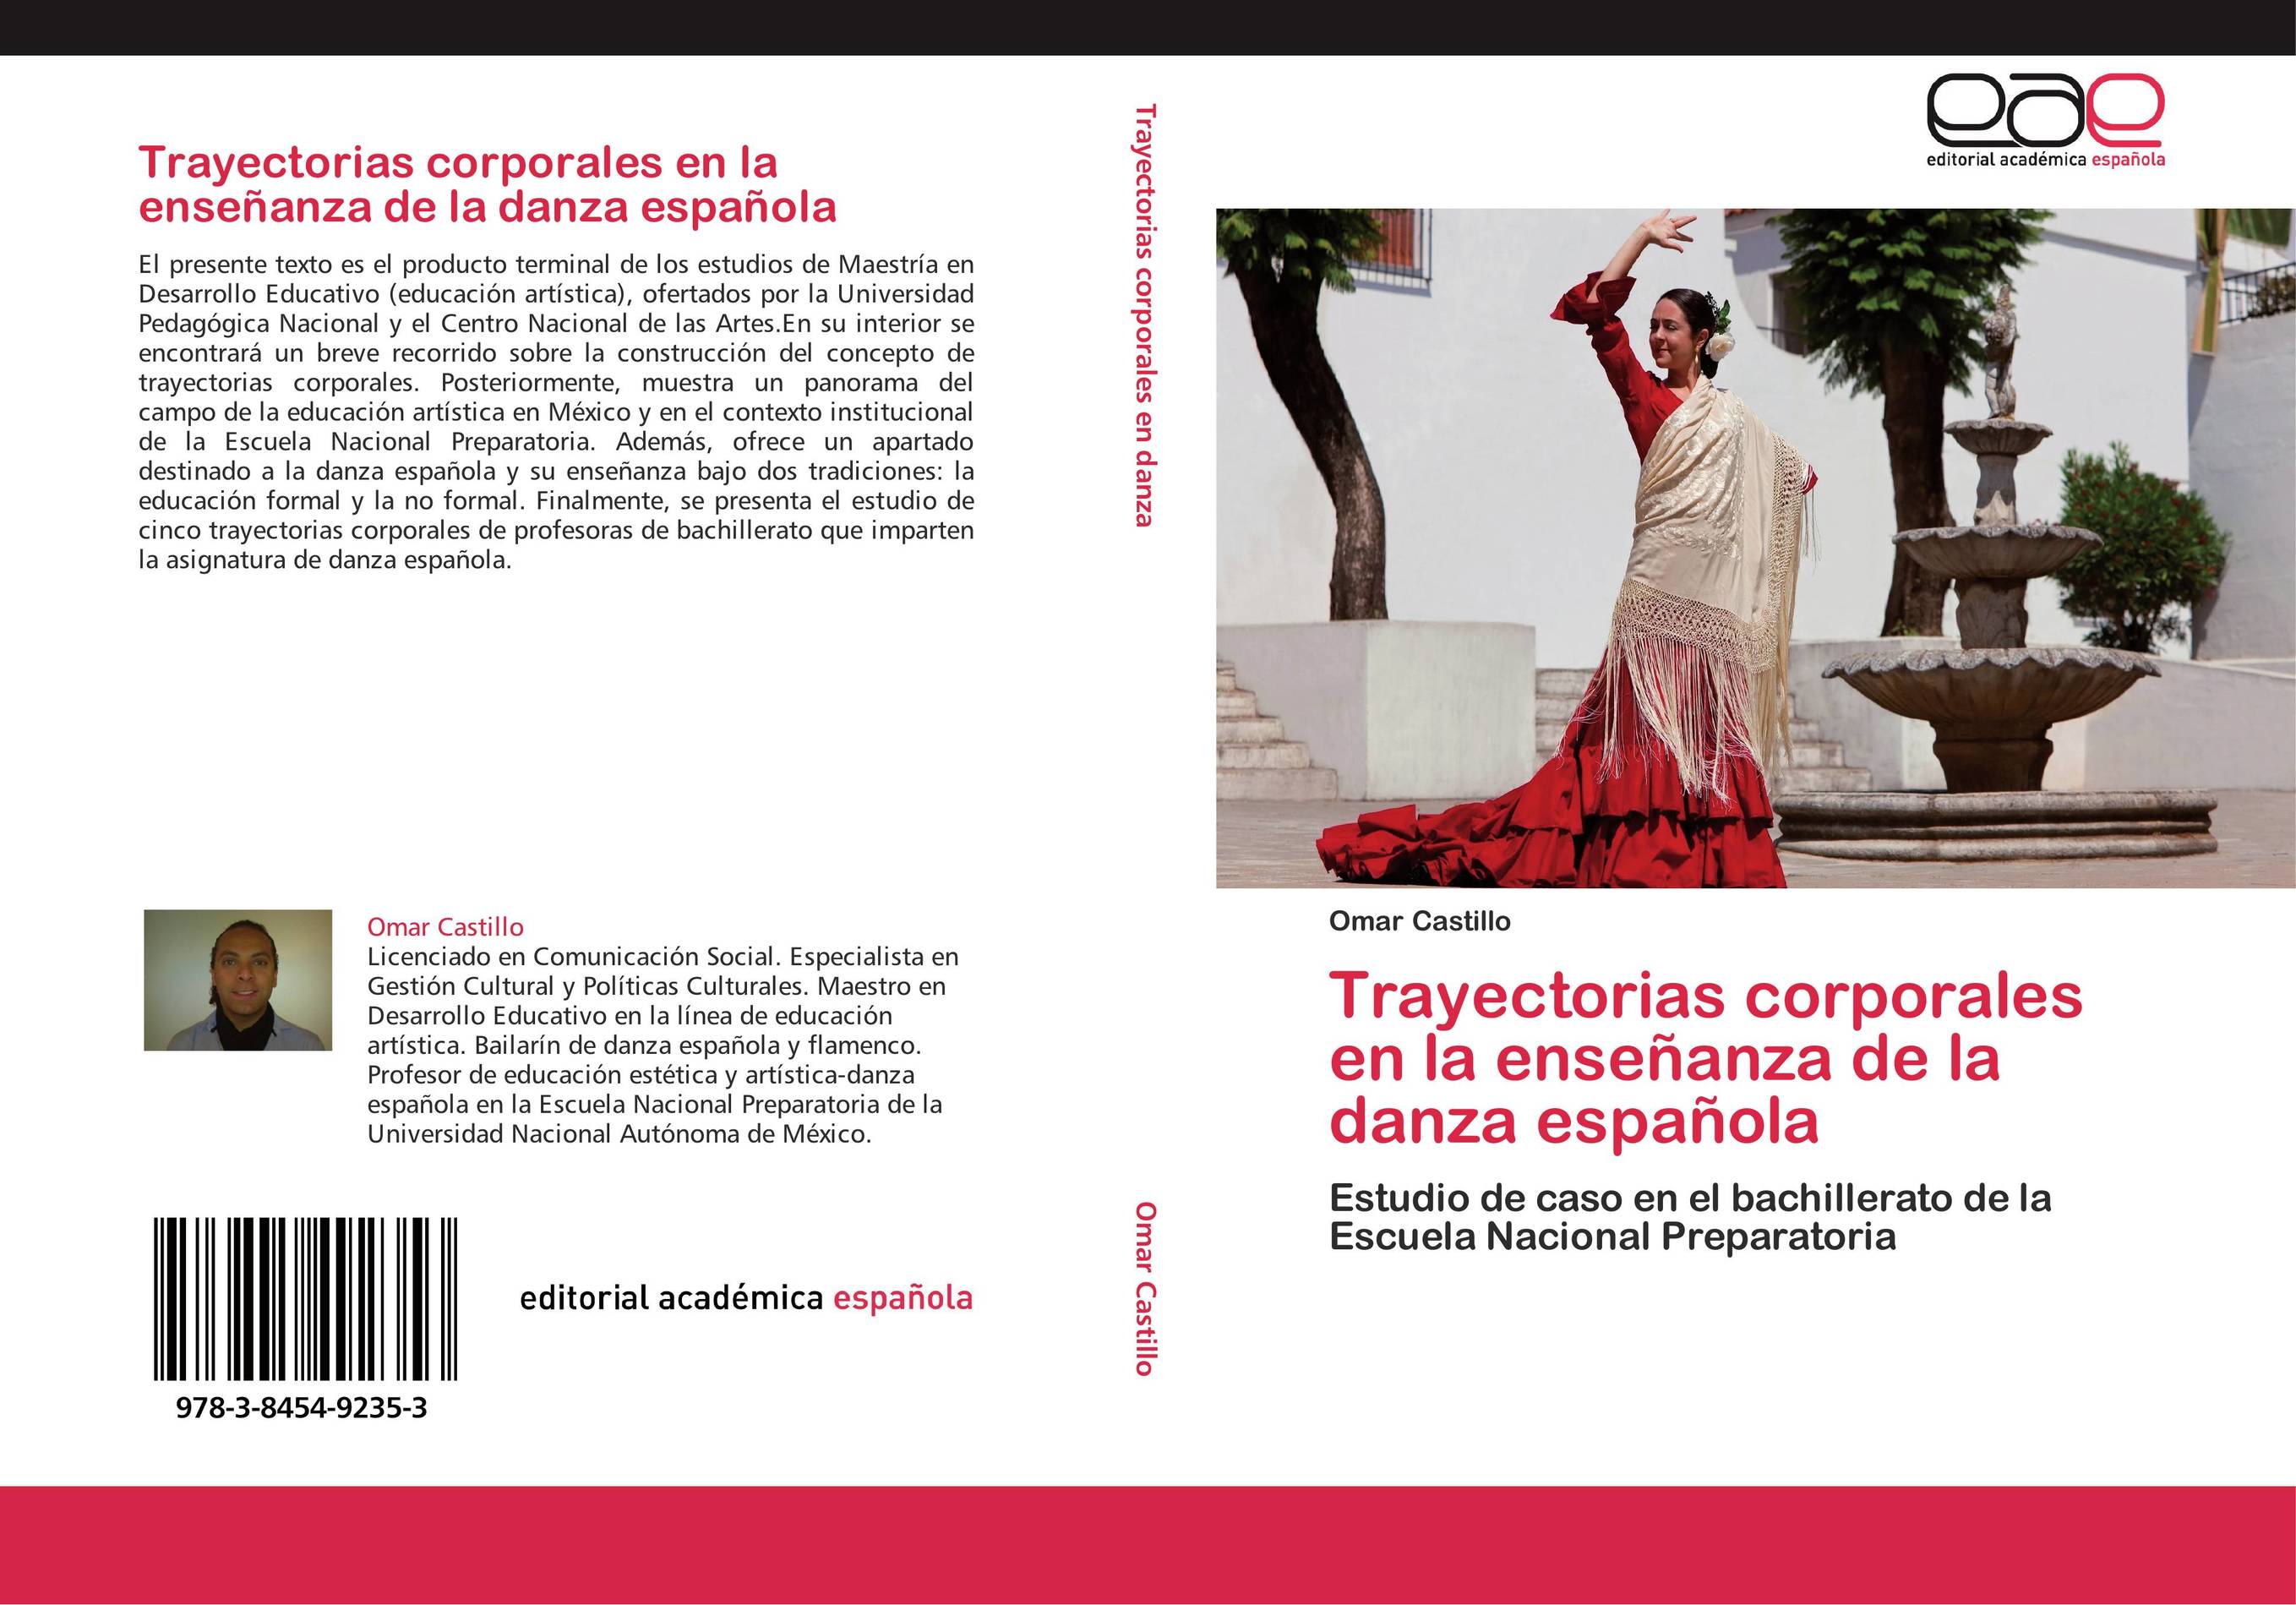 Trayectorias corporales en la enseñanza de la danza española